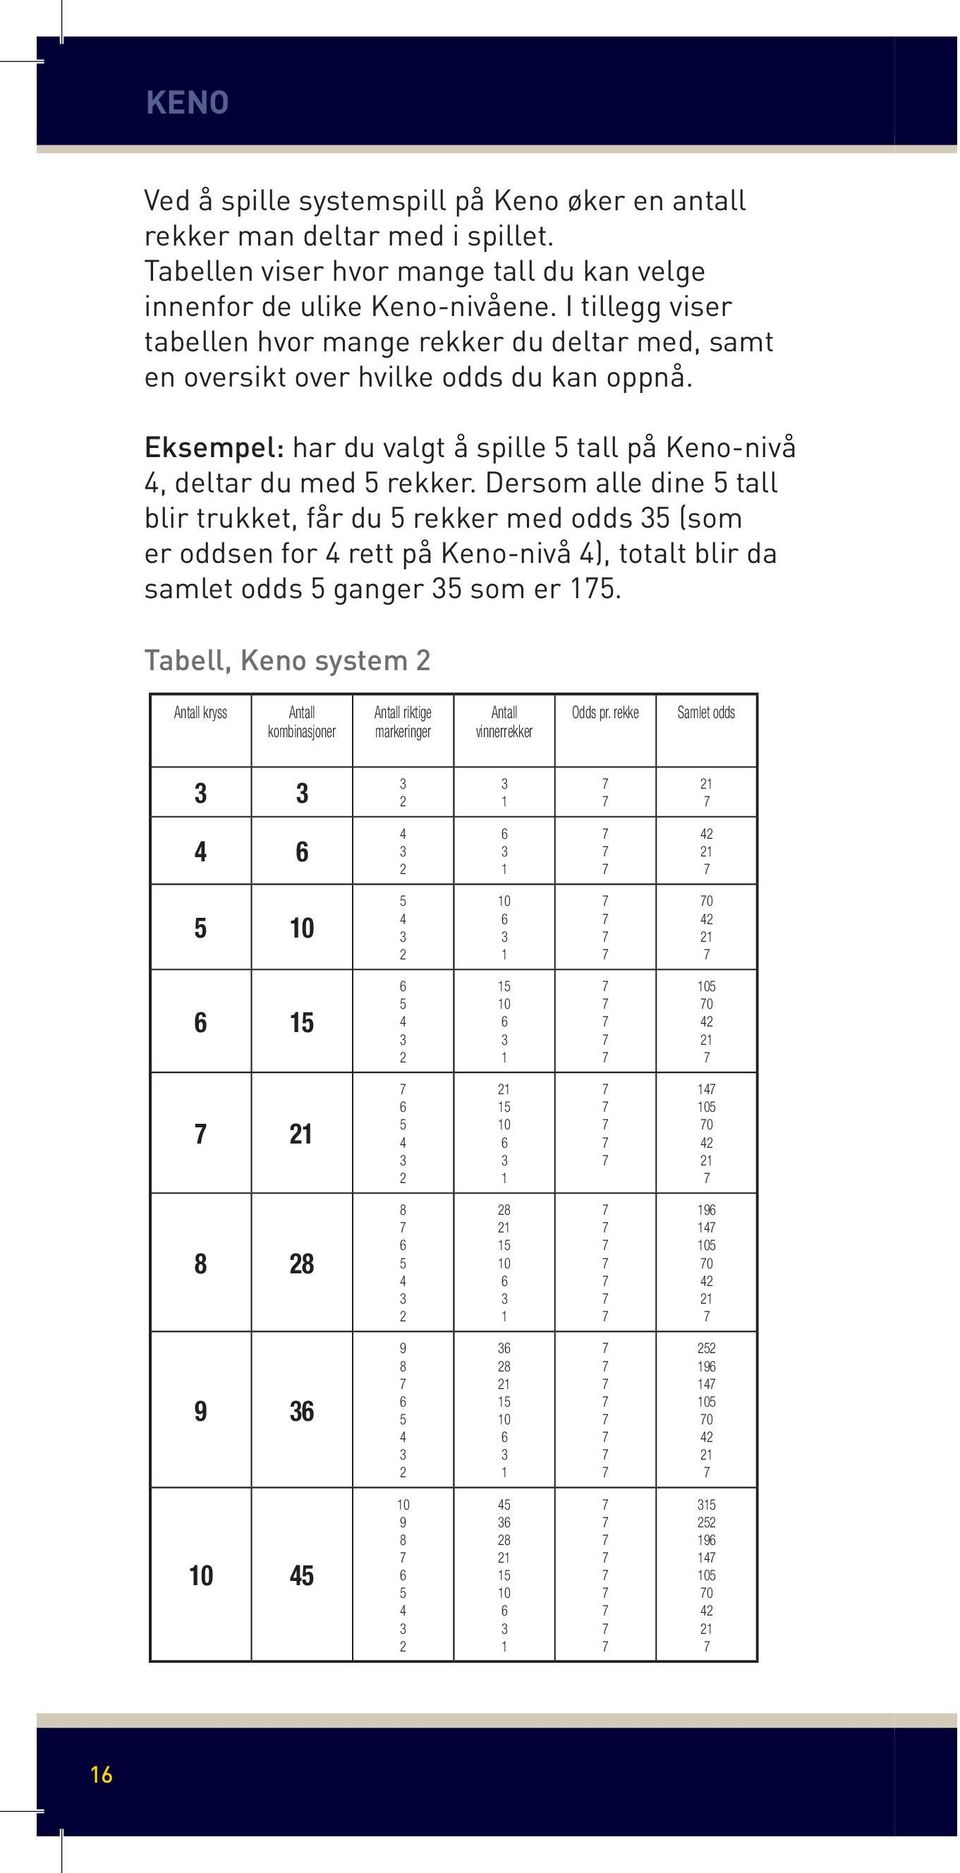 tall (antall kryss) du kan I tillegg velge innenfor viser de ulike tabellen Keno-nivåene når hvor du spiller mange systemspill.